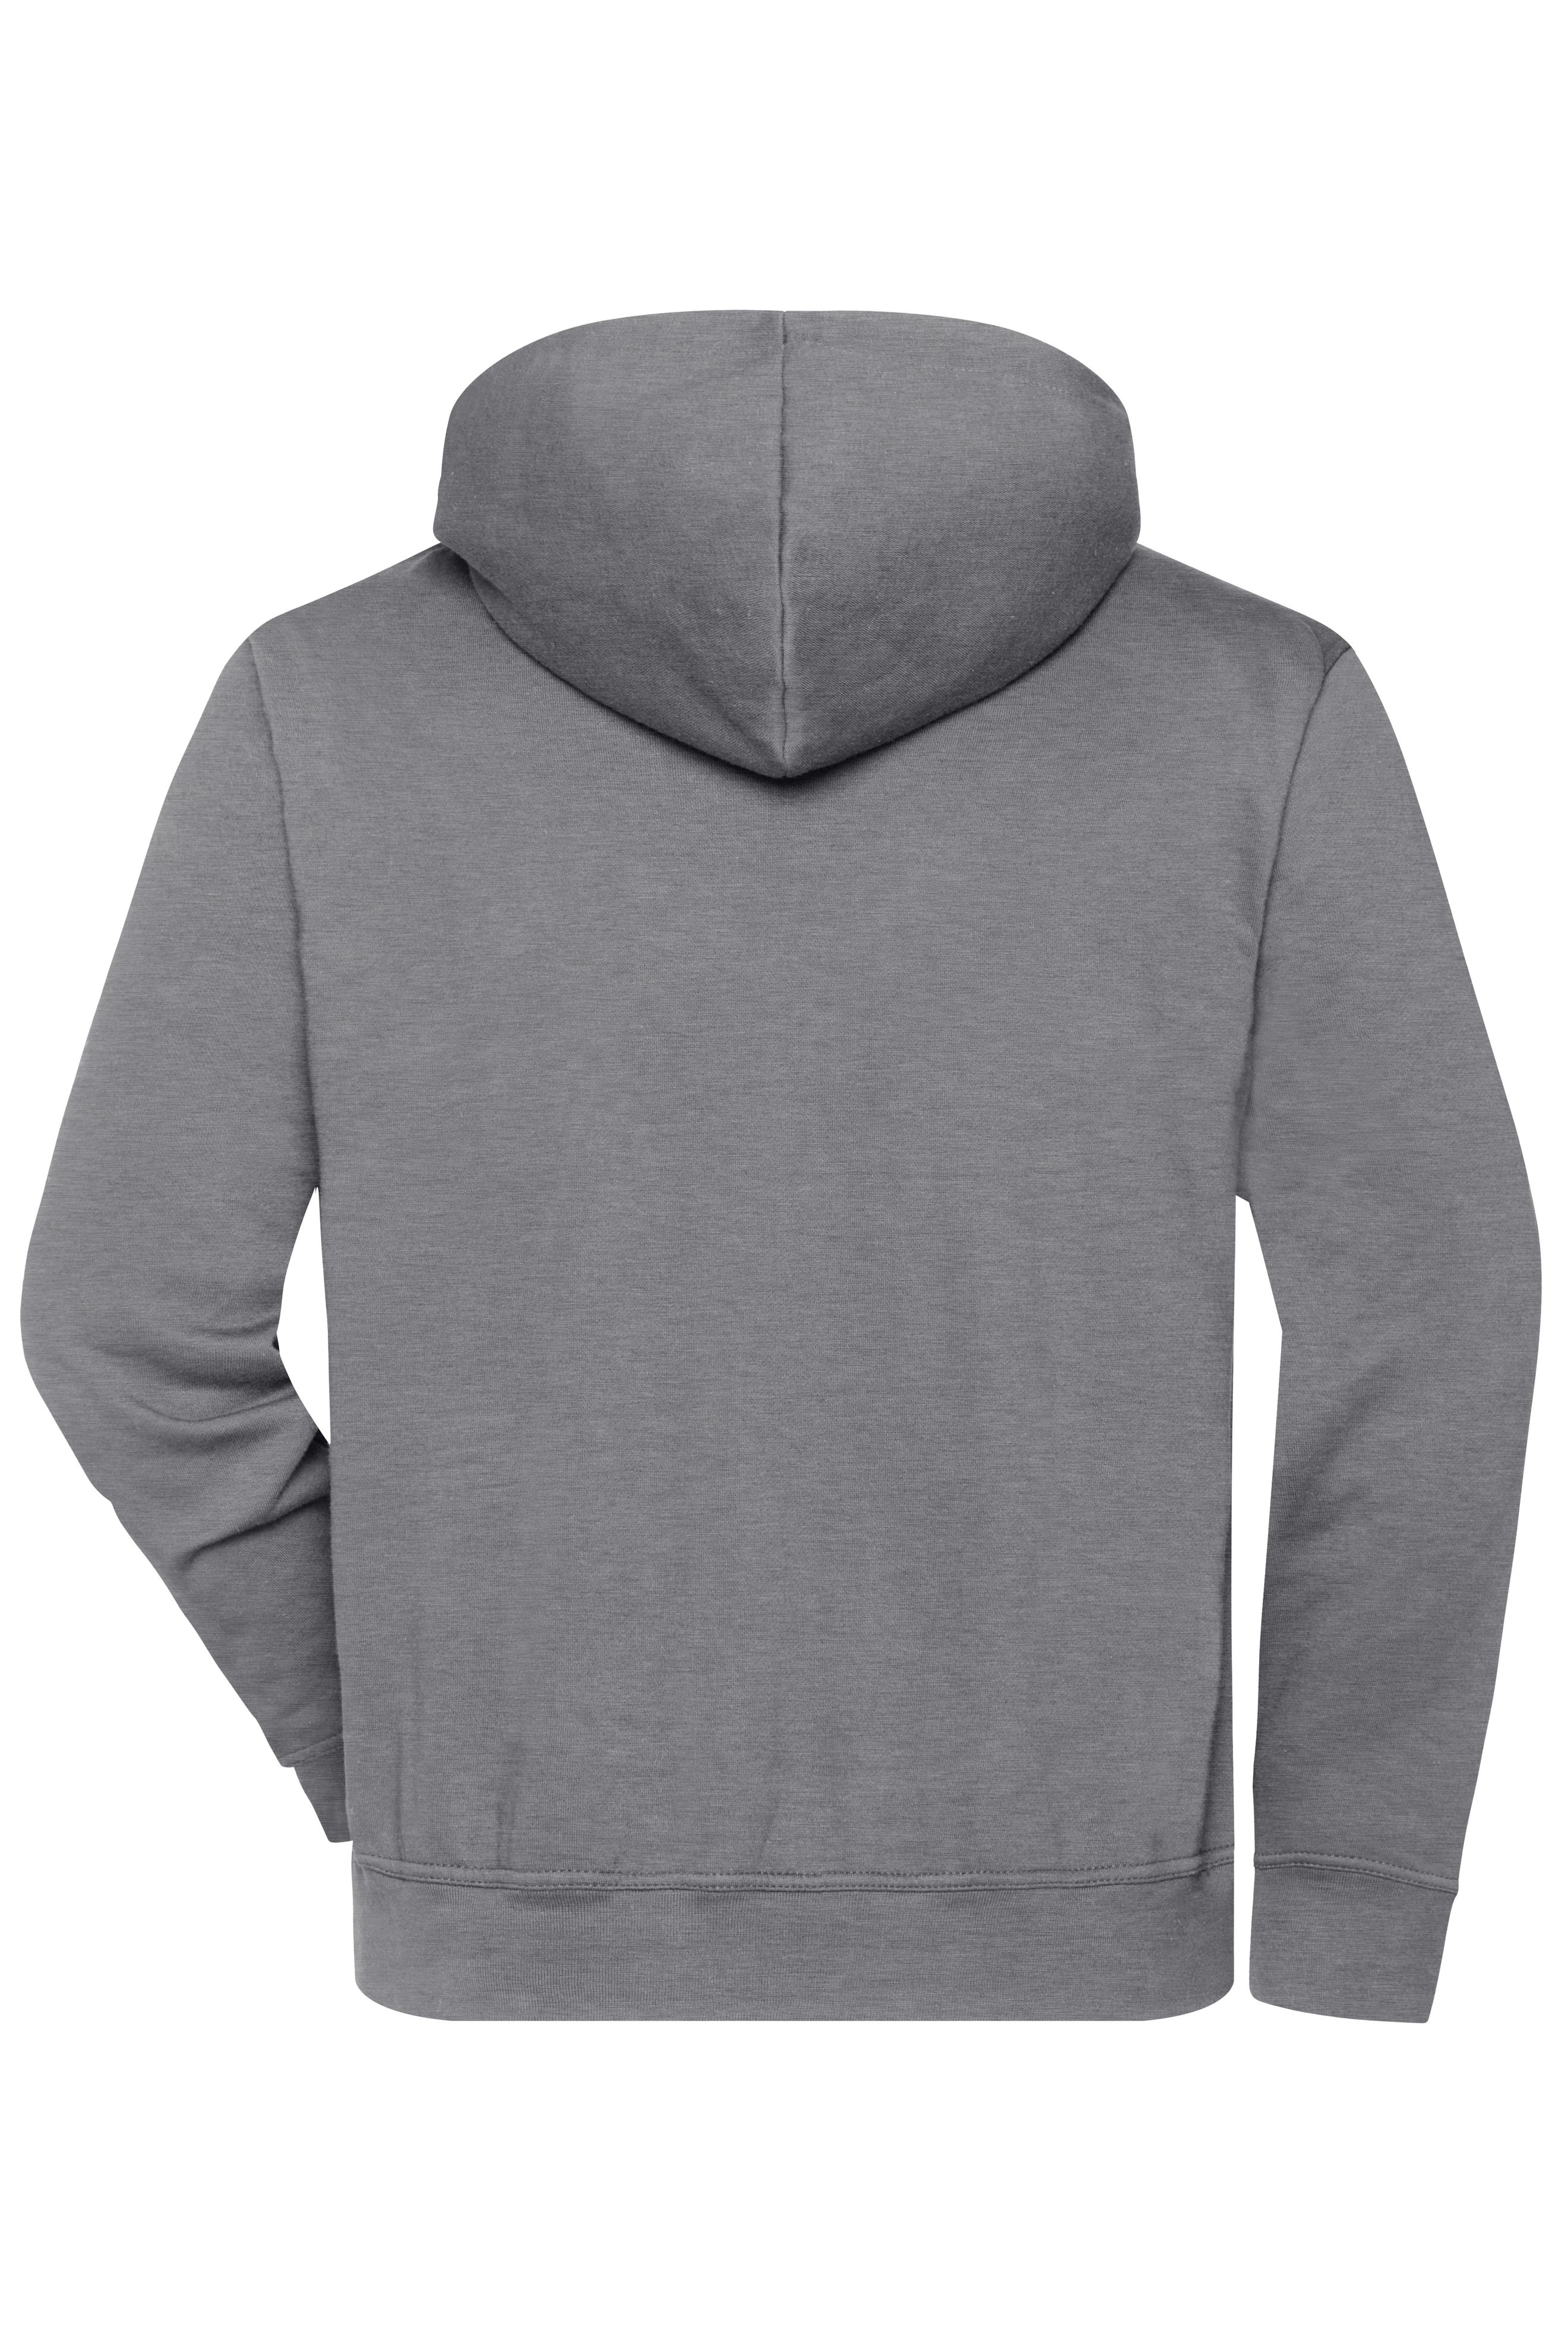 BIO Workwear-Half Zip Hoody JN839 Sweatshirt mit Kapuze und Reißverschluss